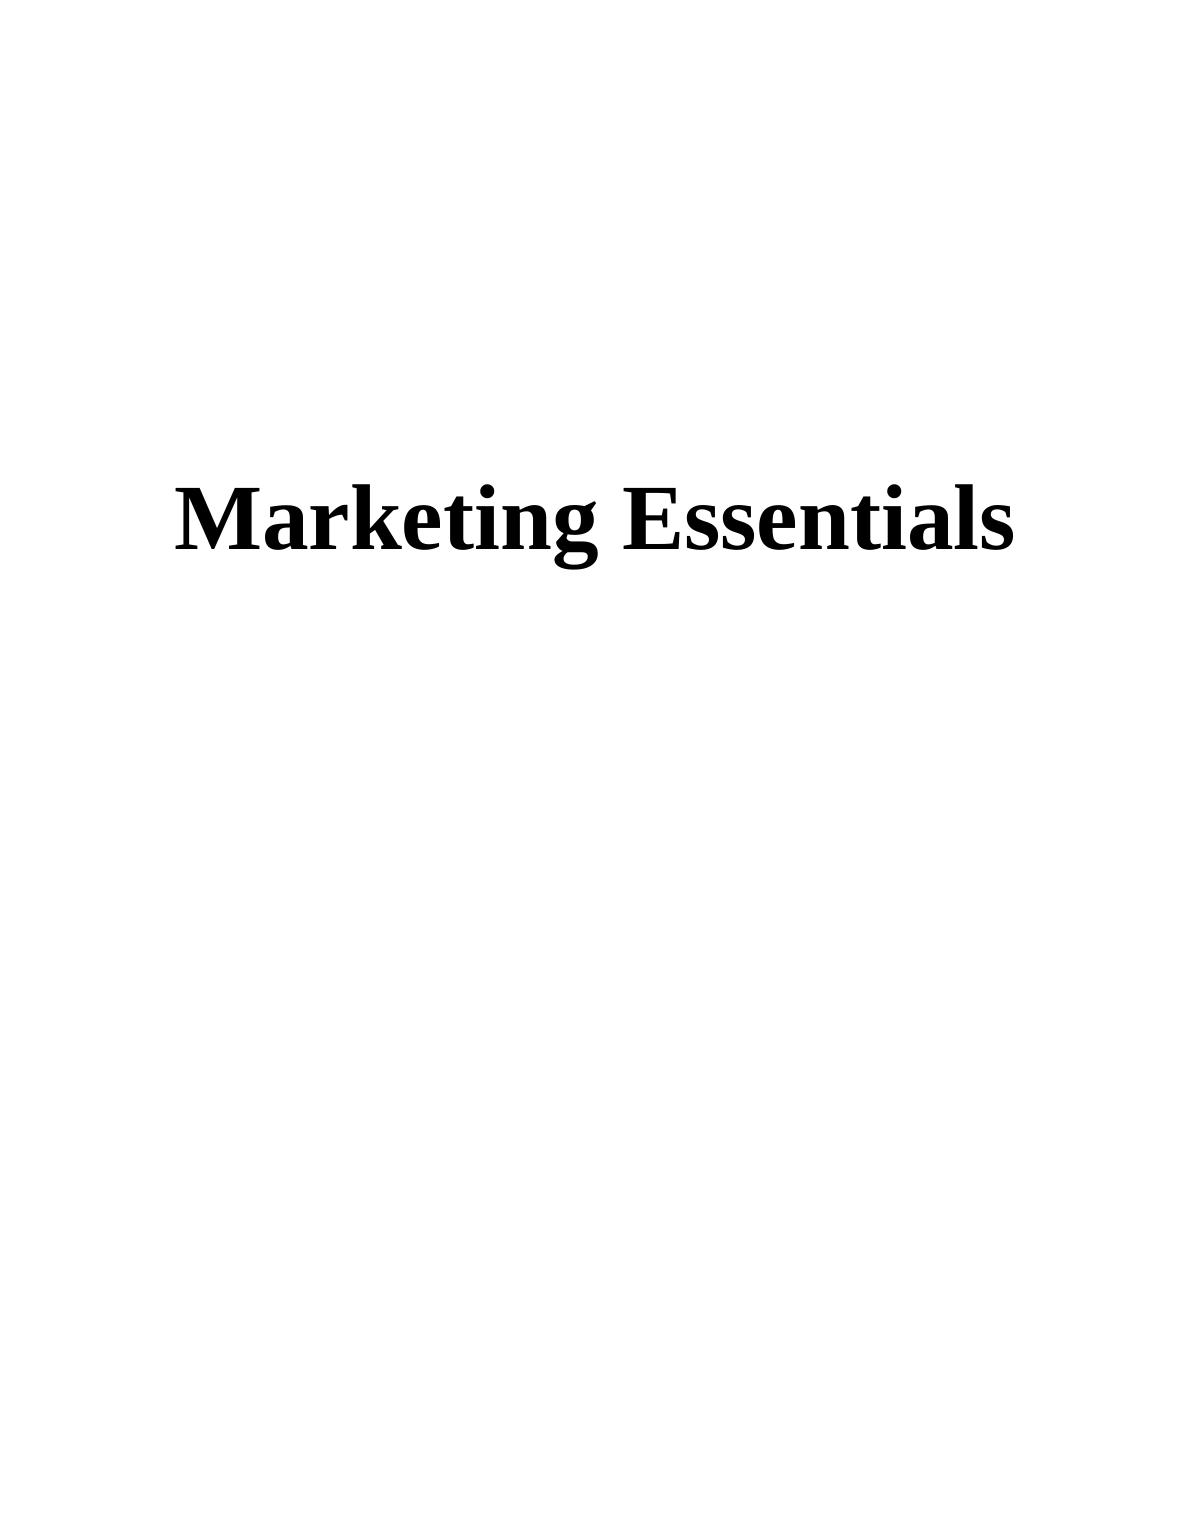 Marketing Essentials of Vodafone_1